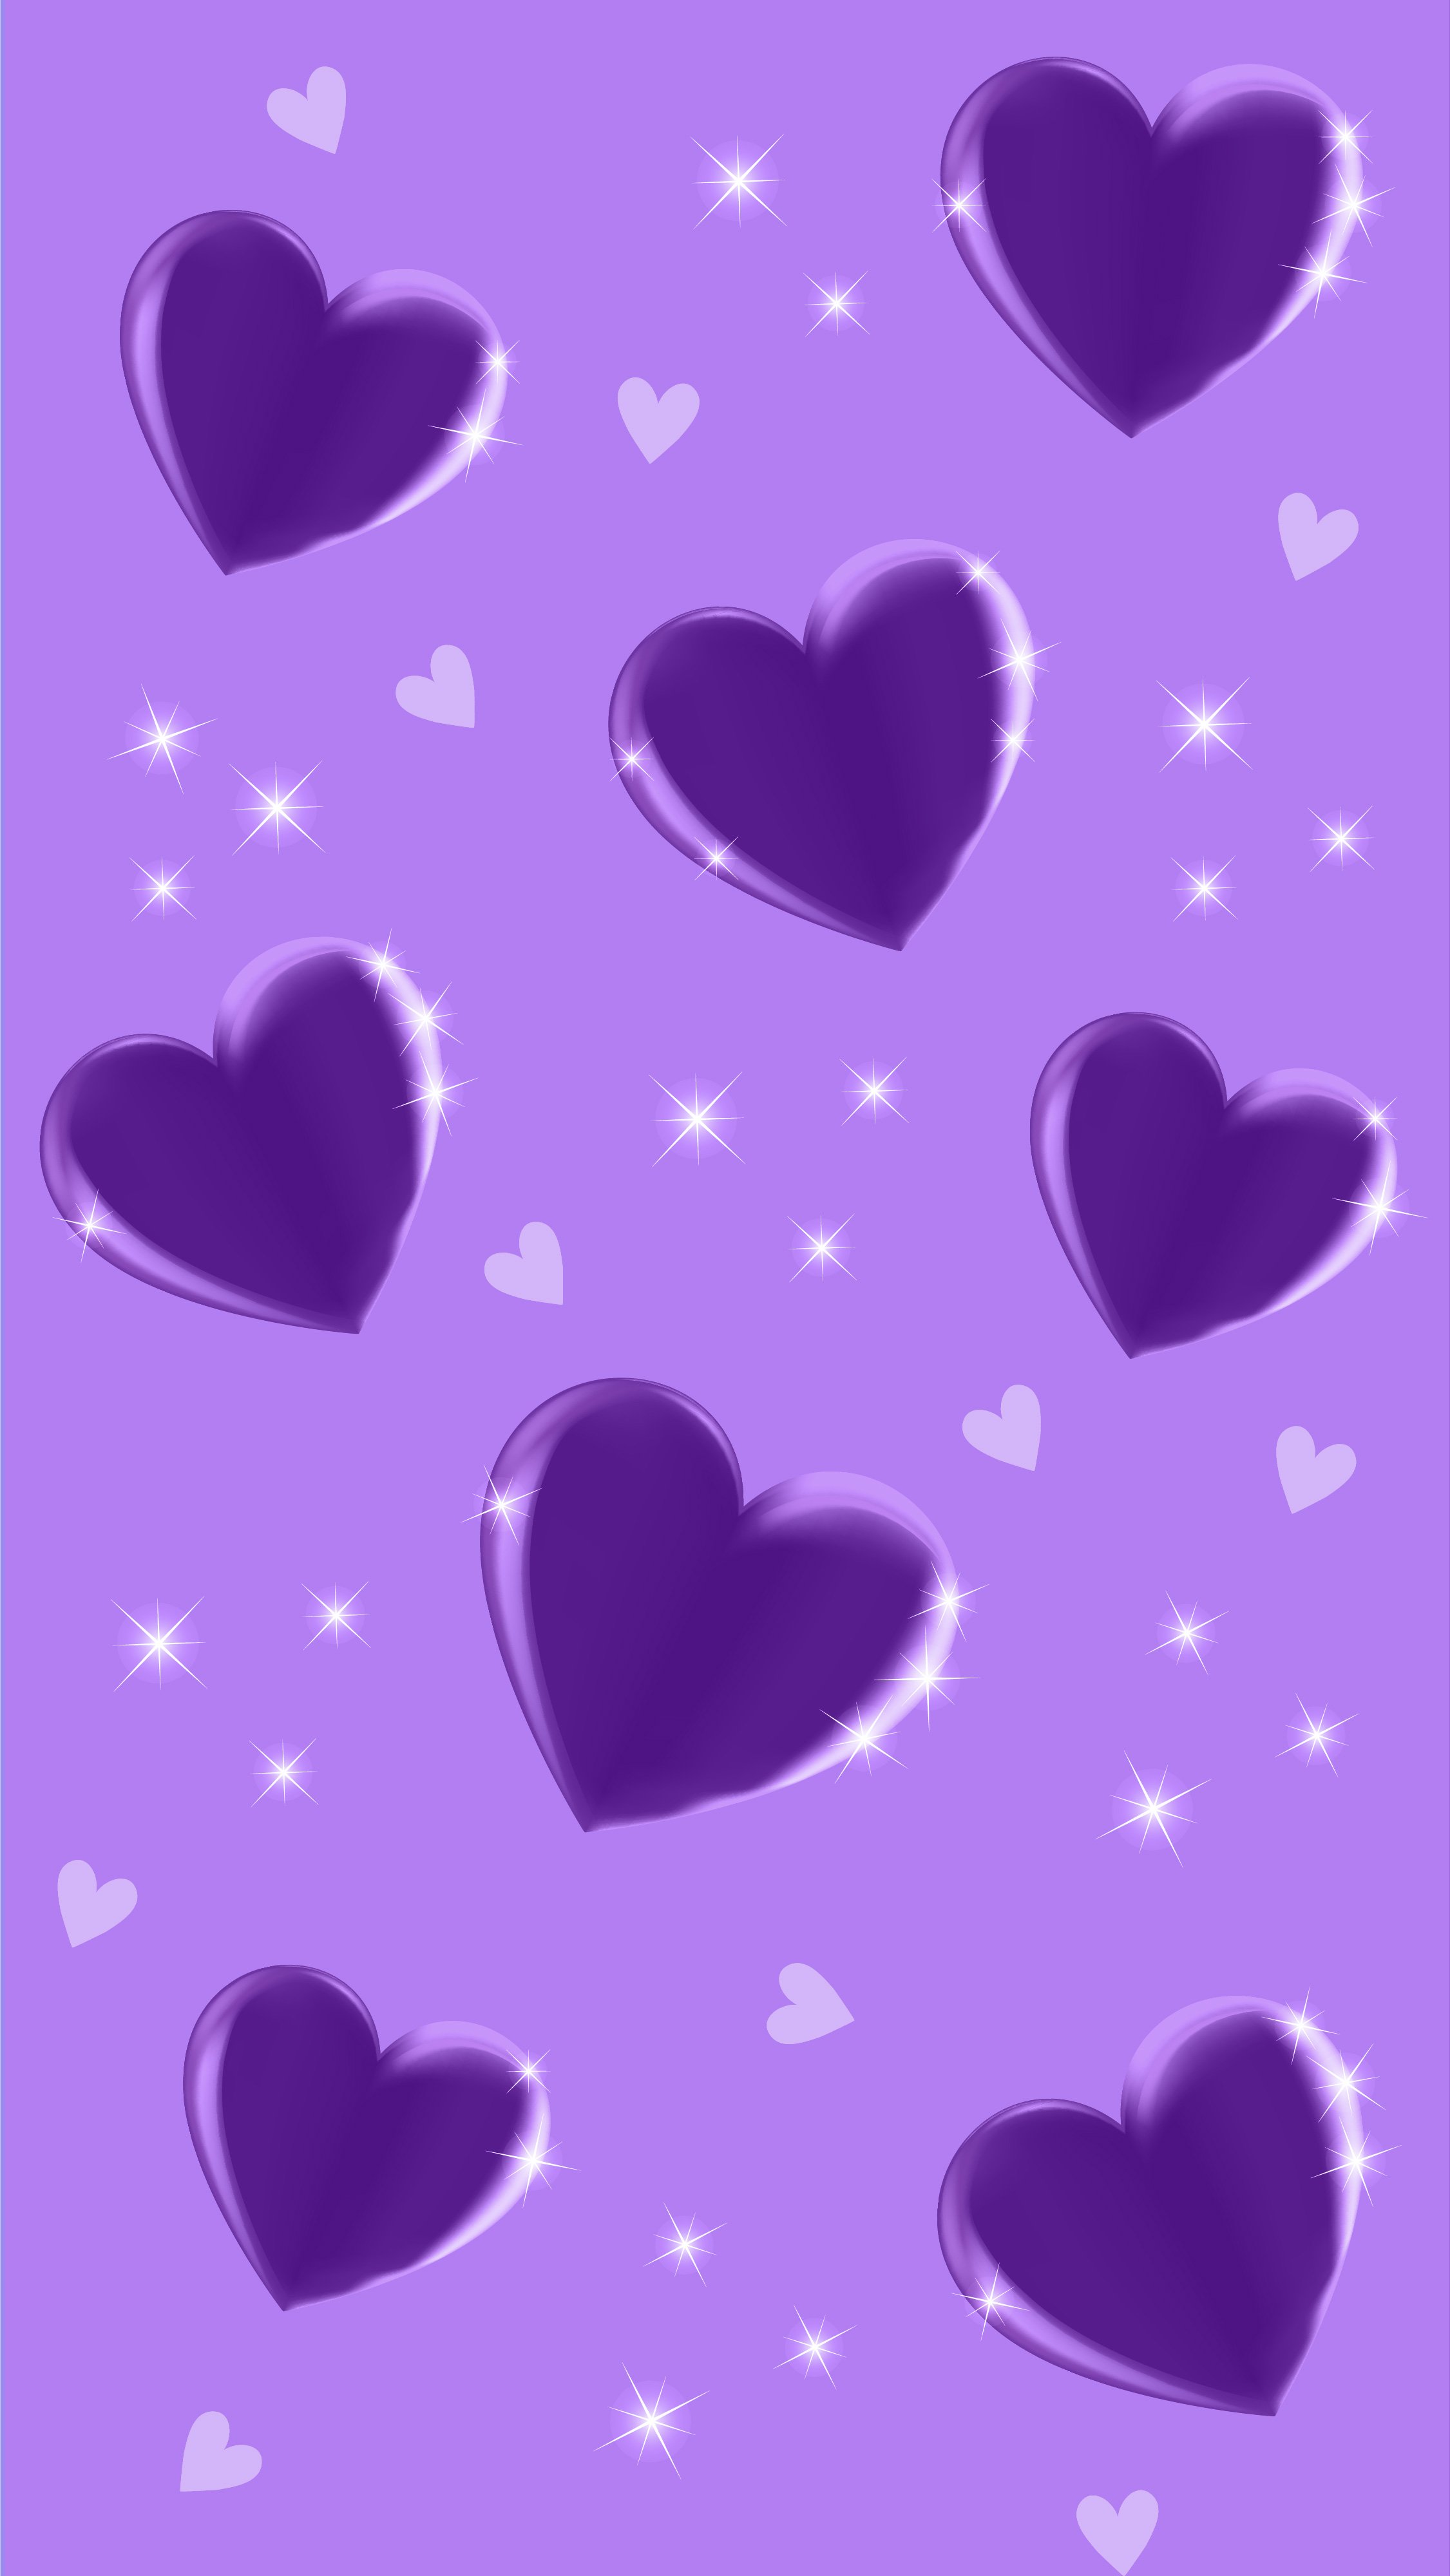 310 Heart ideas | heart wallpaper, i love heart, heart art